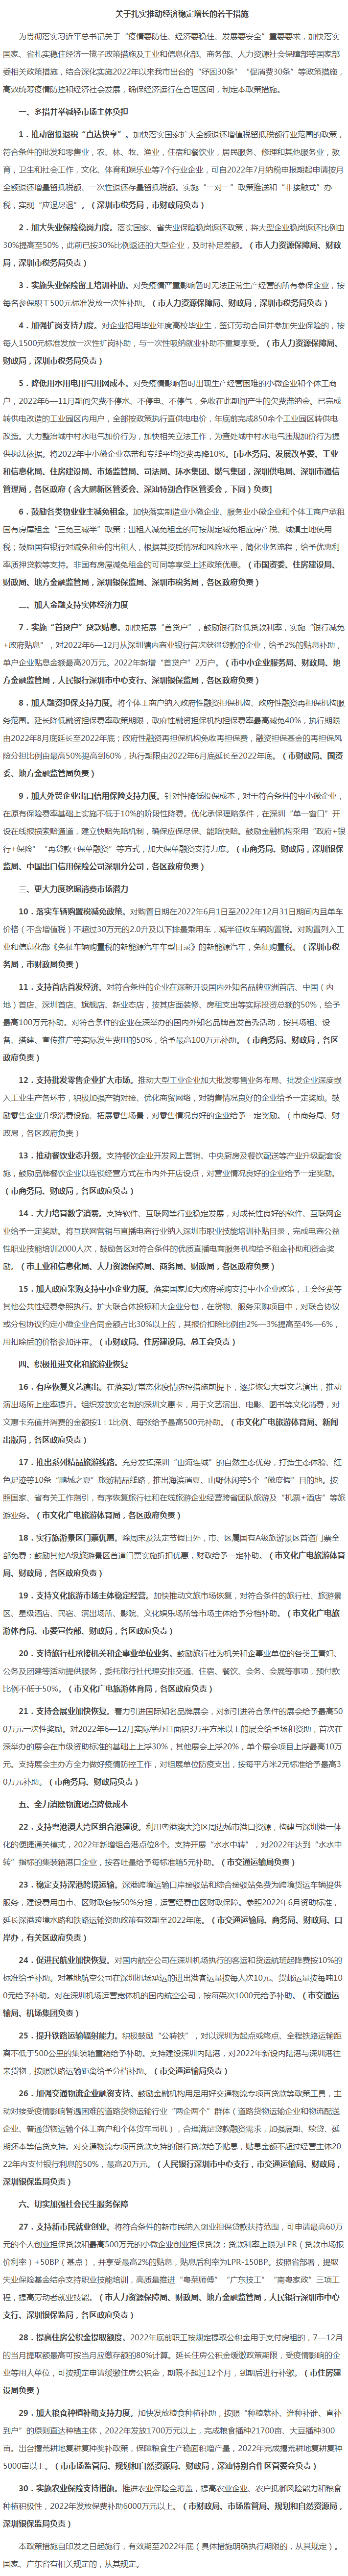 深圳市人民政府关于印发扎实推动经济稳定增长若干措施的通知.png